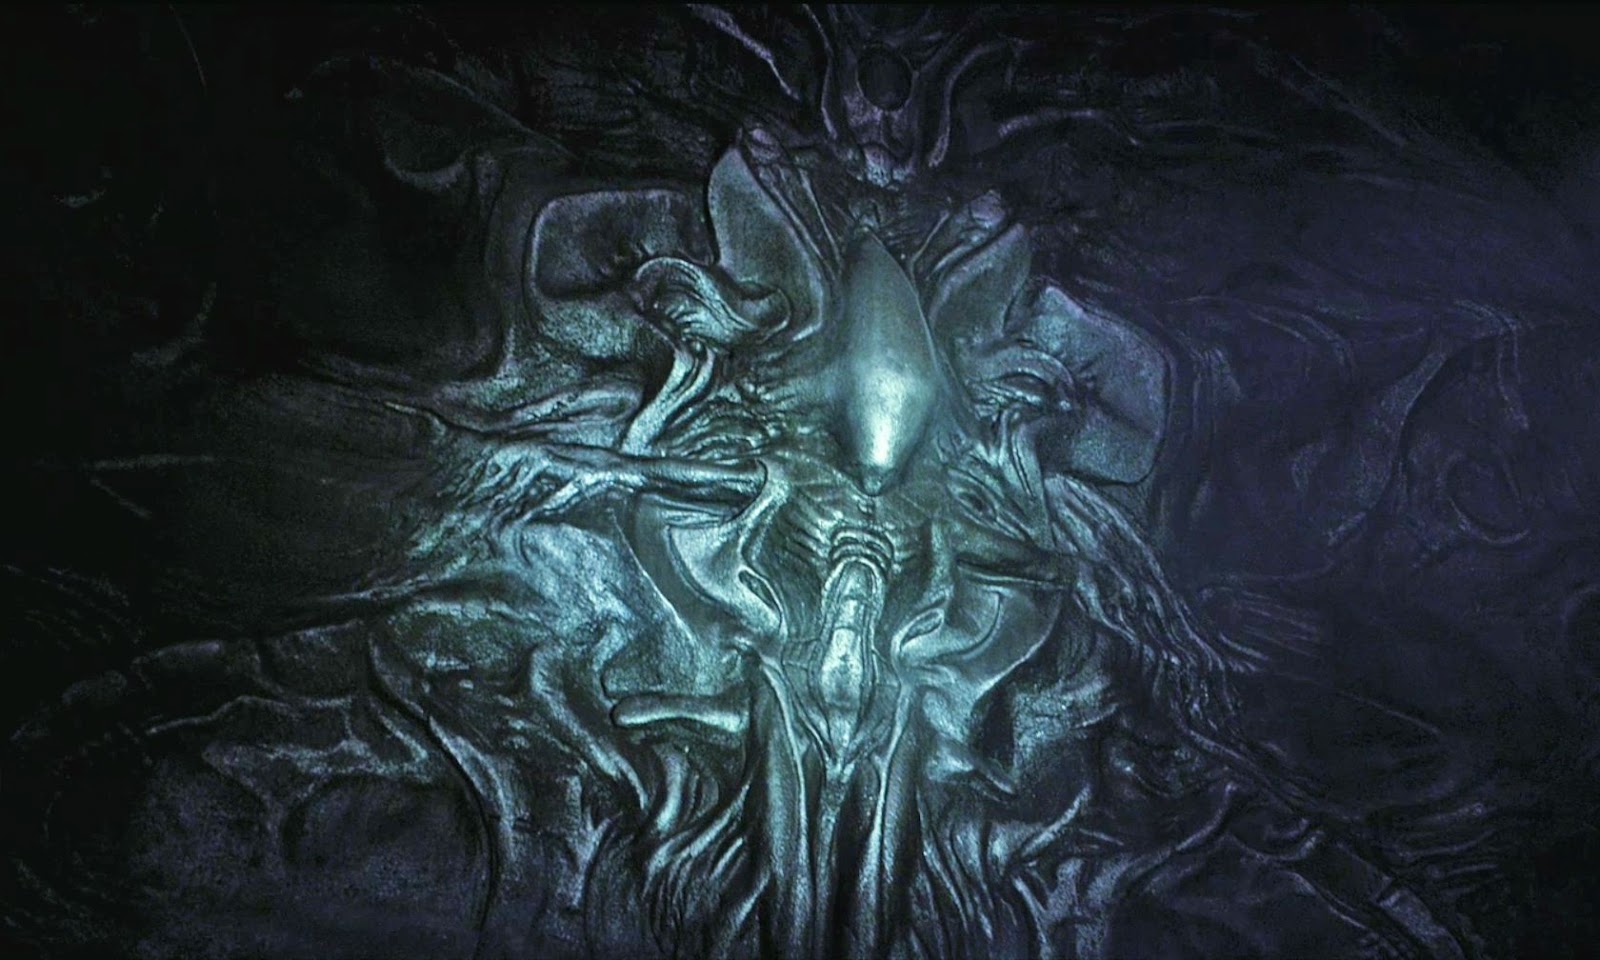 Výsledek obrázku pro prometheus alien on the wall